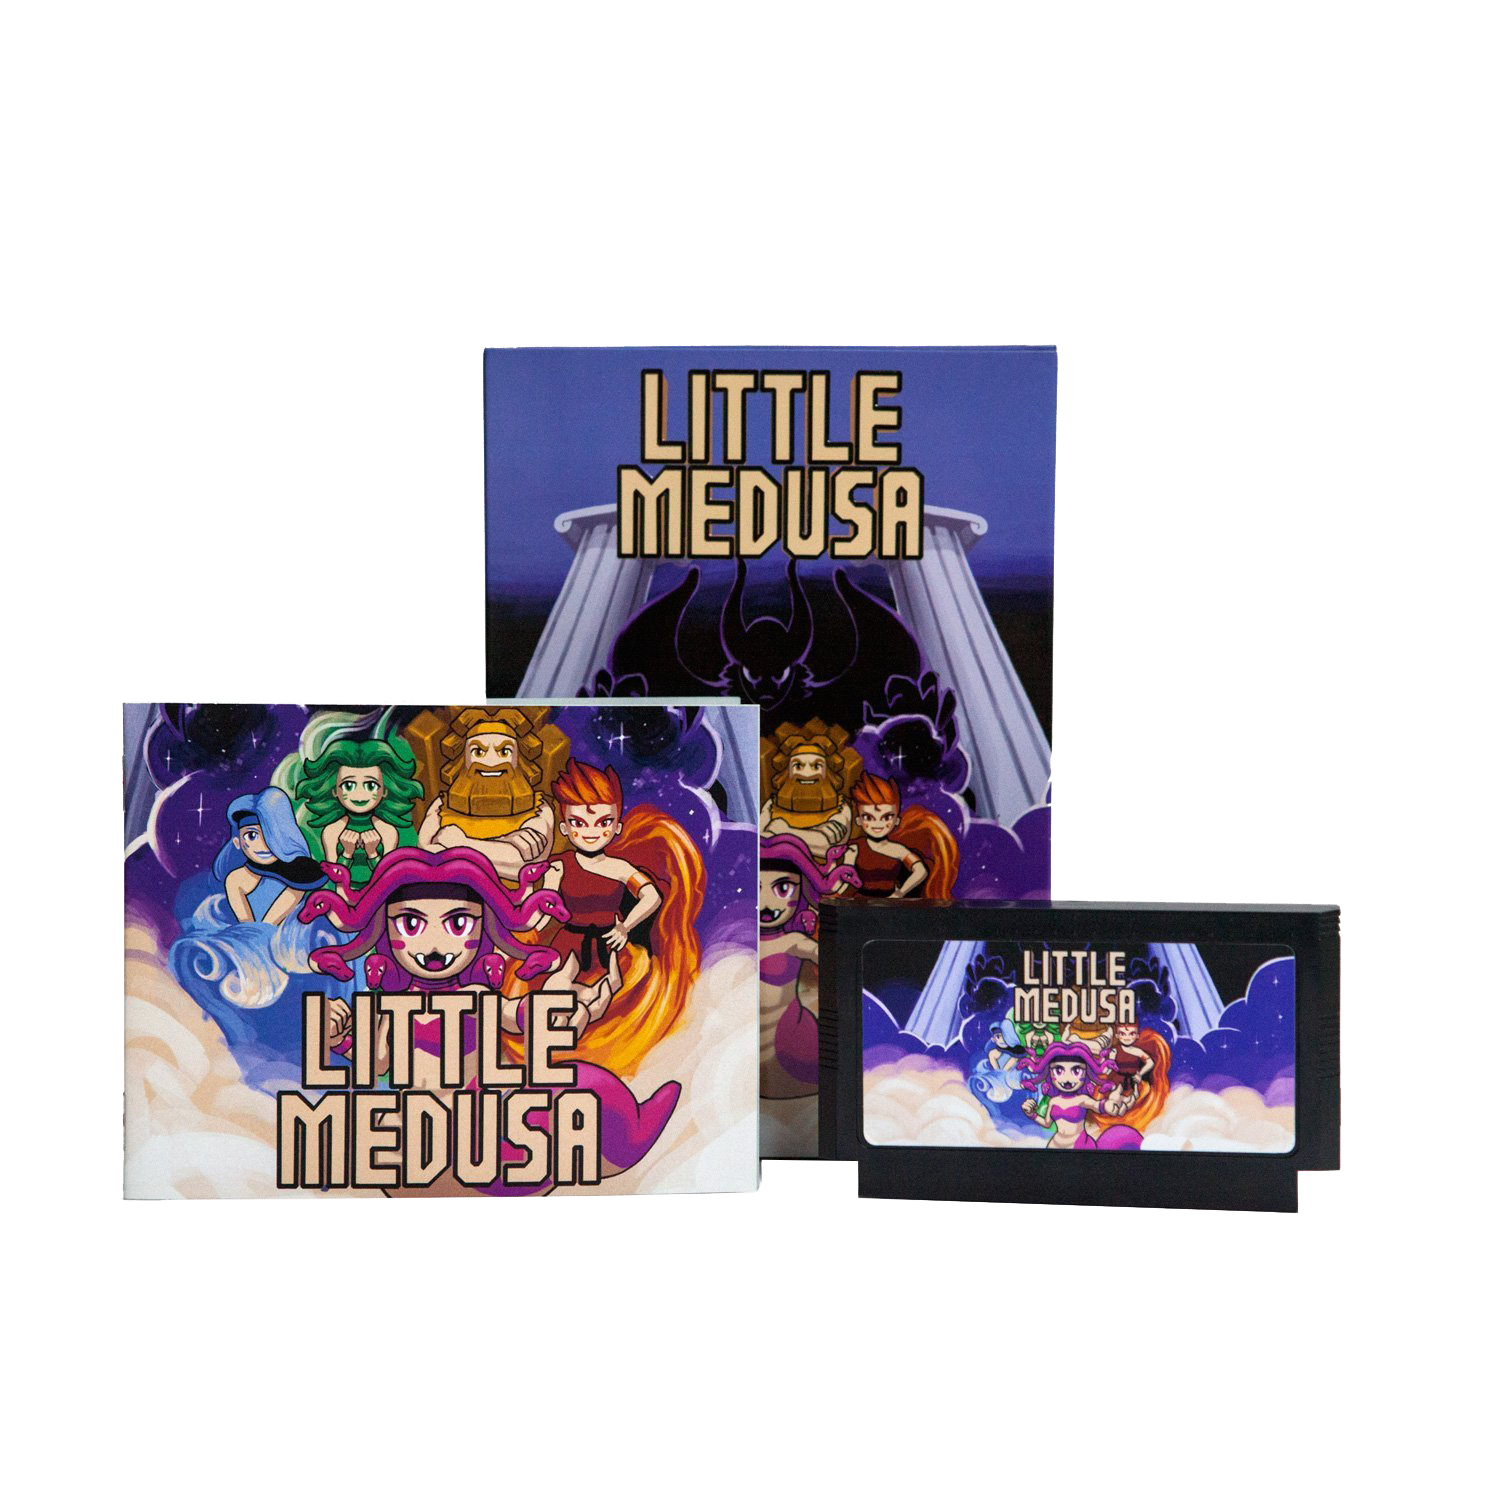 Little Medusa for SNES – Mega Cat Studios, Inc.